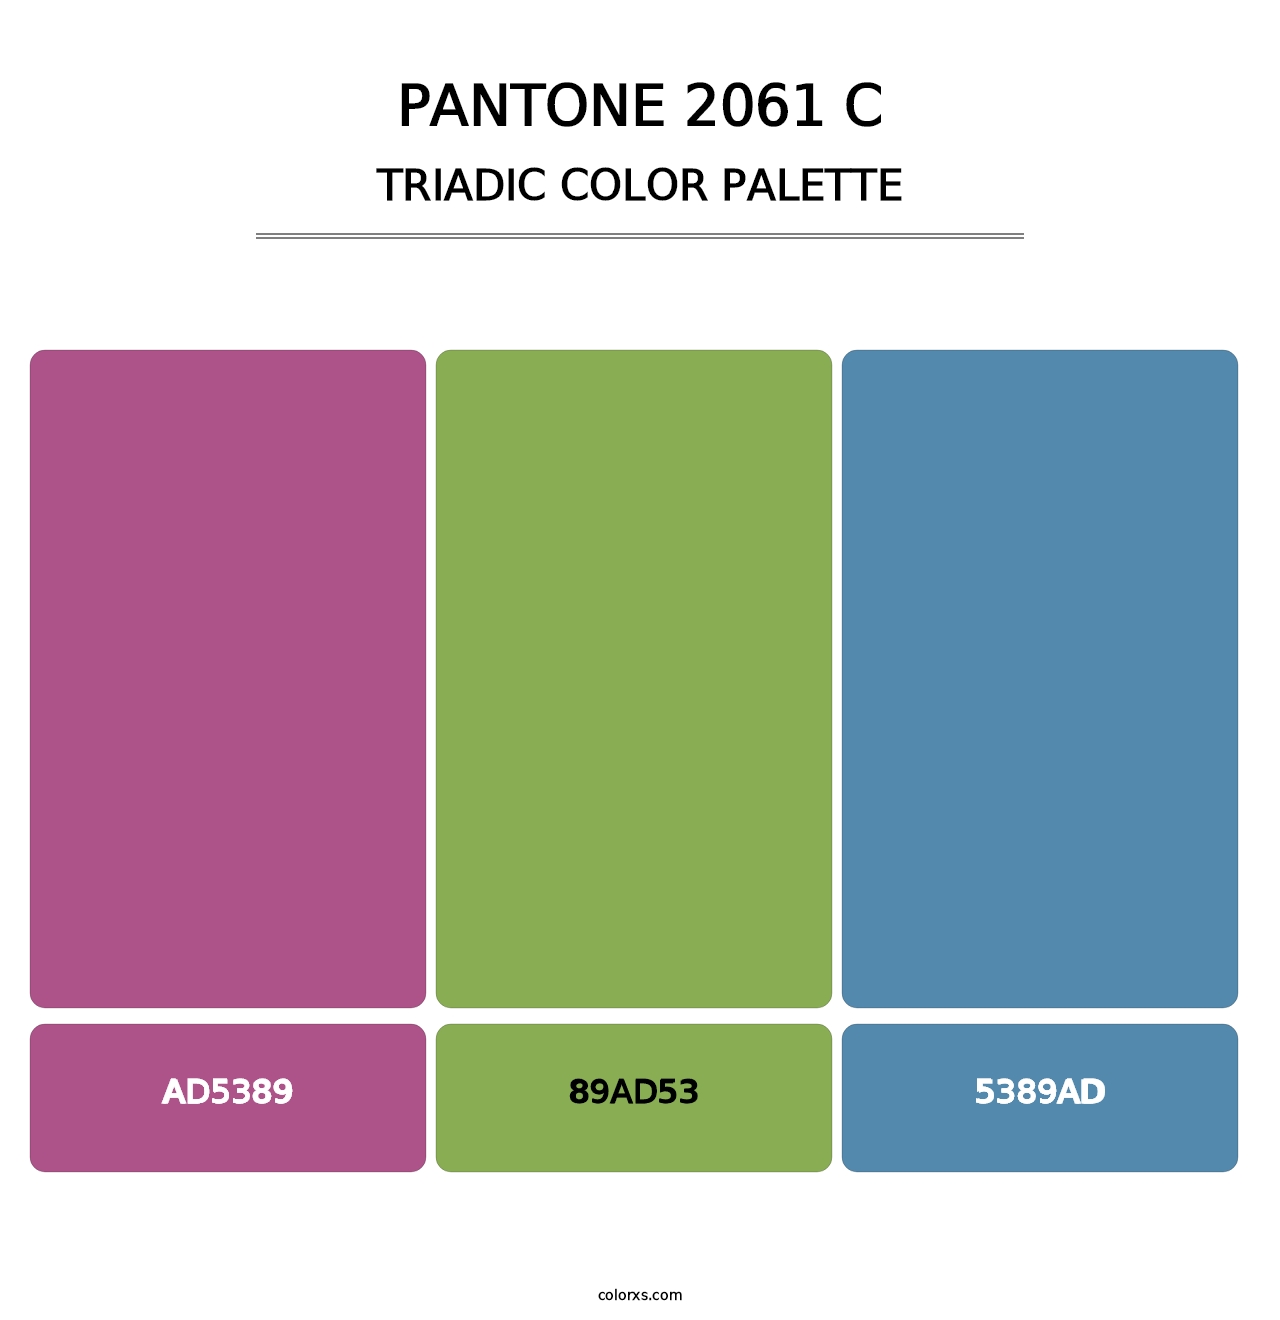 PANTONE 2061 C - Triadic Color Palette